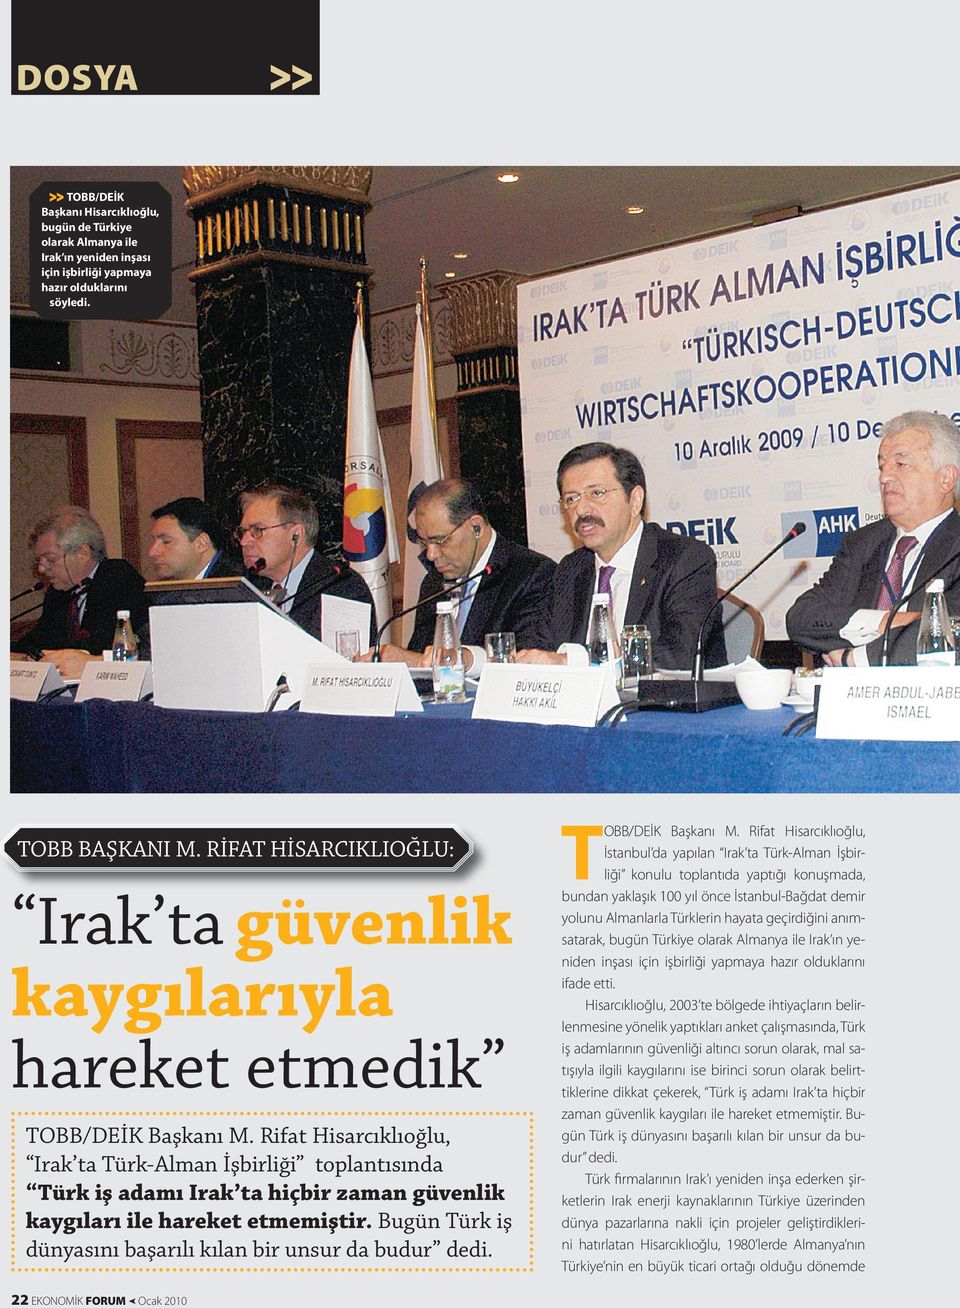 Rifat Hisarcıklıoğlu, Irak ta Türk-Alman İşbirliği toplantısında Türk iş adamı Irak ta hiçbir zaman güvenlik kaygıları ile hareket etmemiştir.